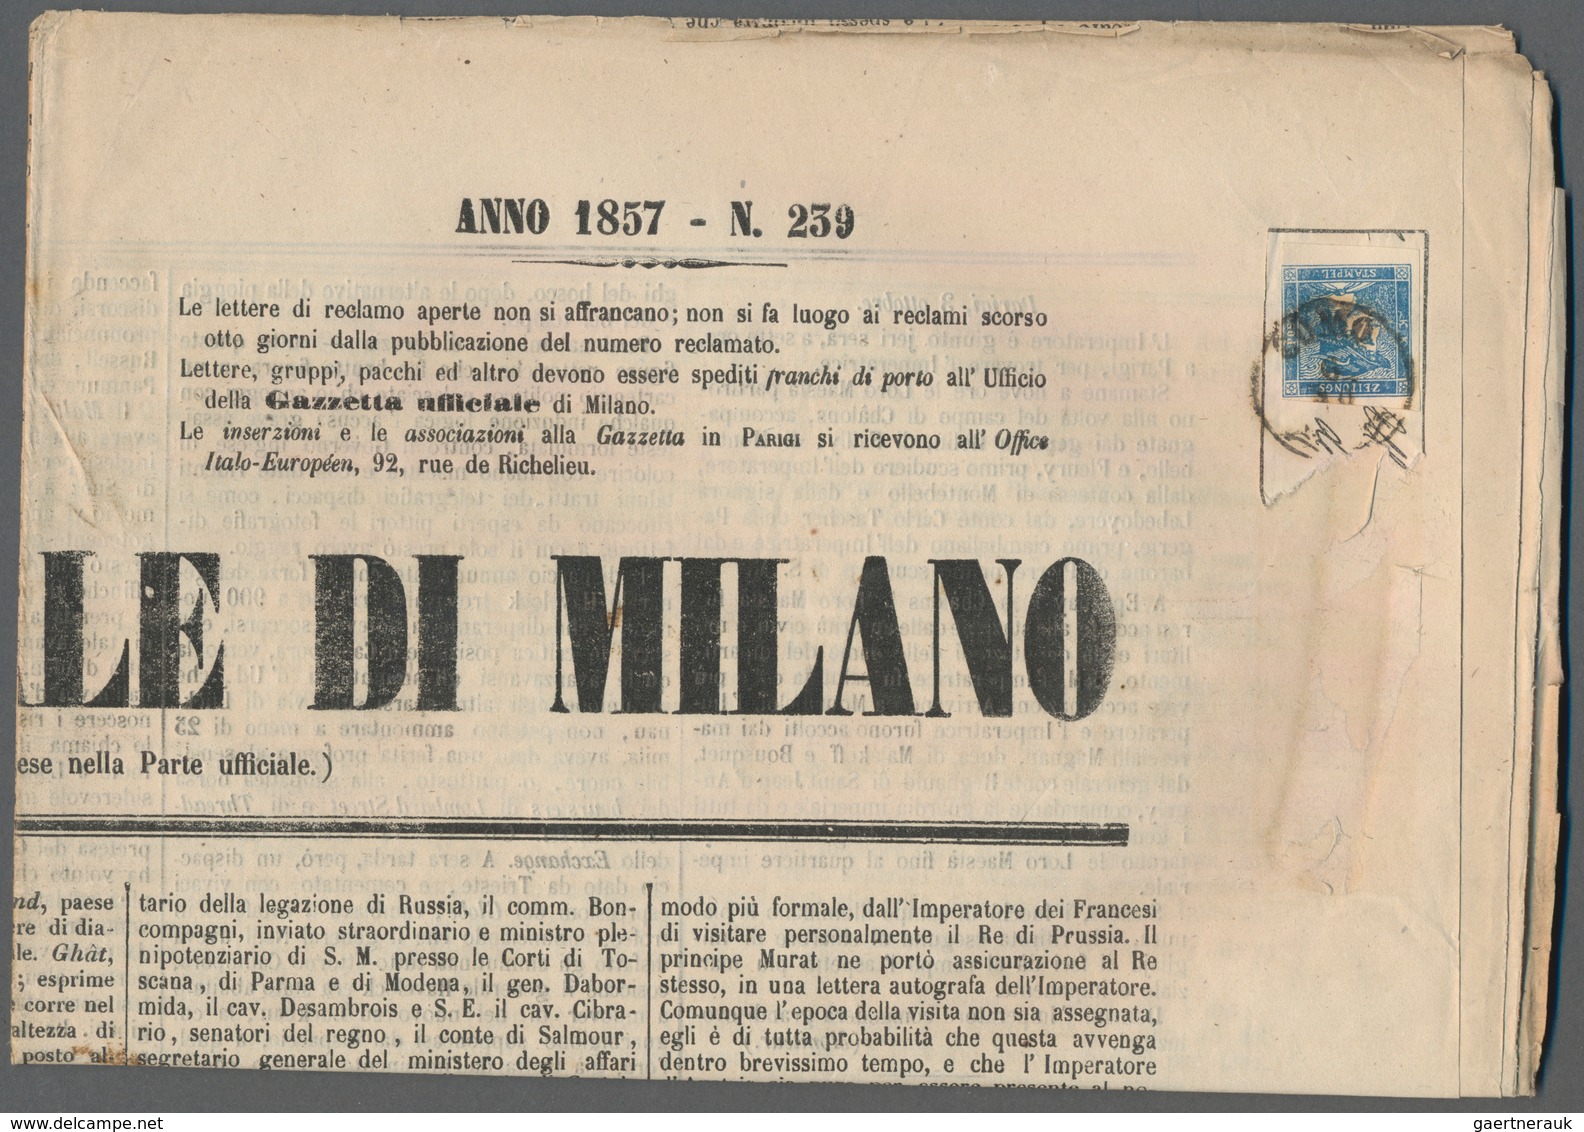 Österreich: 1851, Konvolut mit 10 kompletten Zeitungen "GAZZETTA UFFICIALE DI MILANO" aus den Jahren